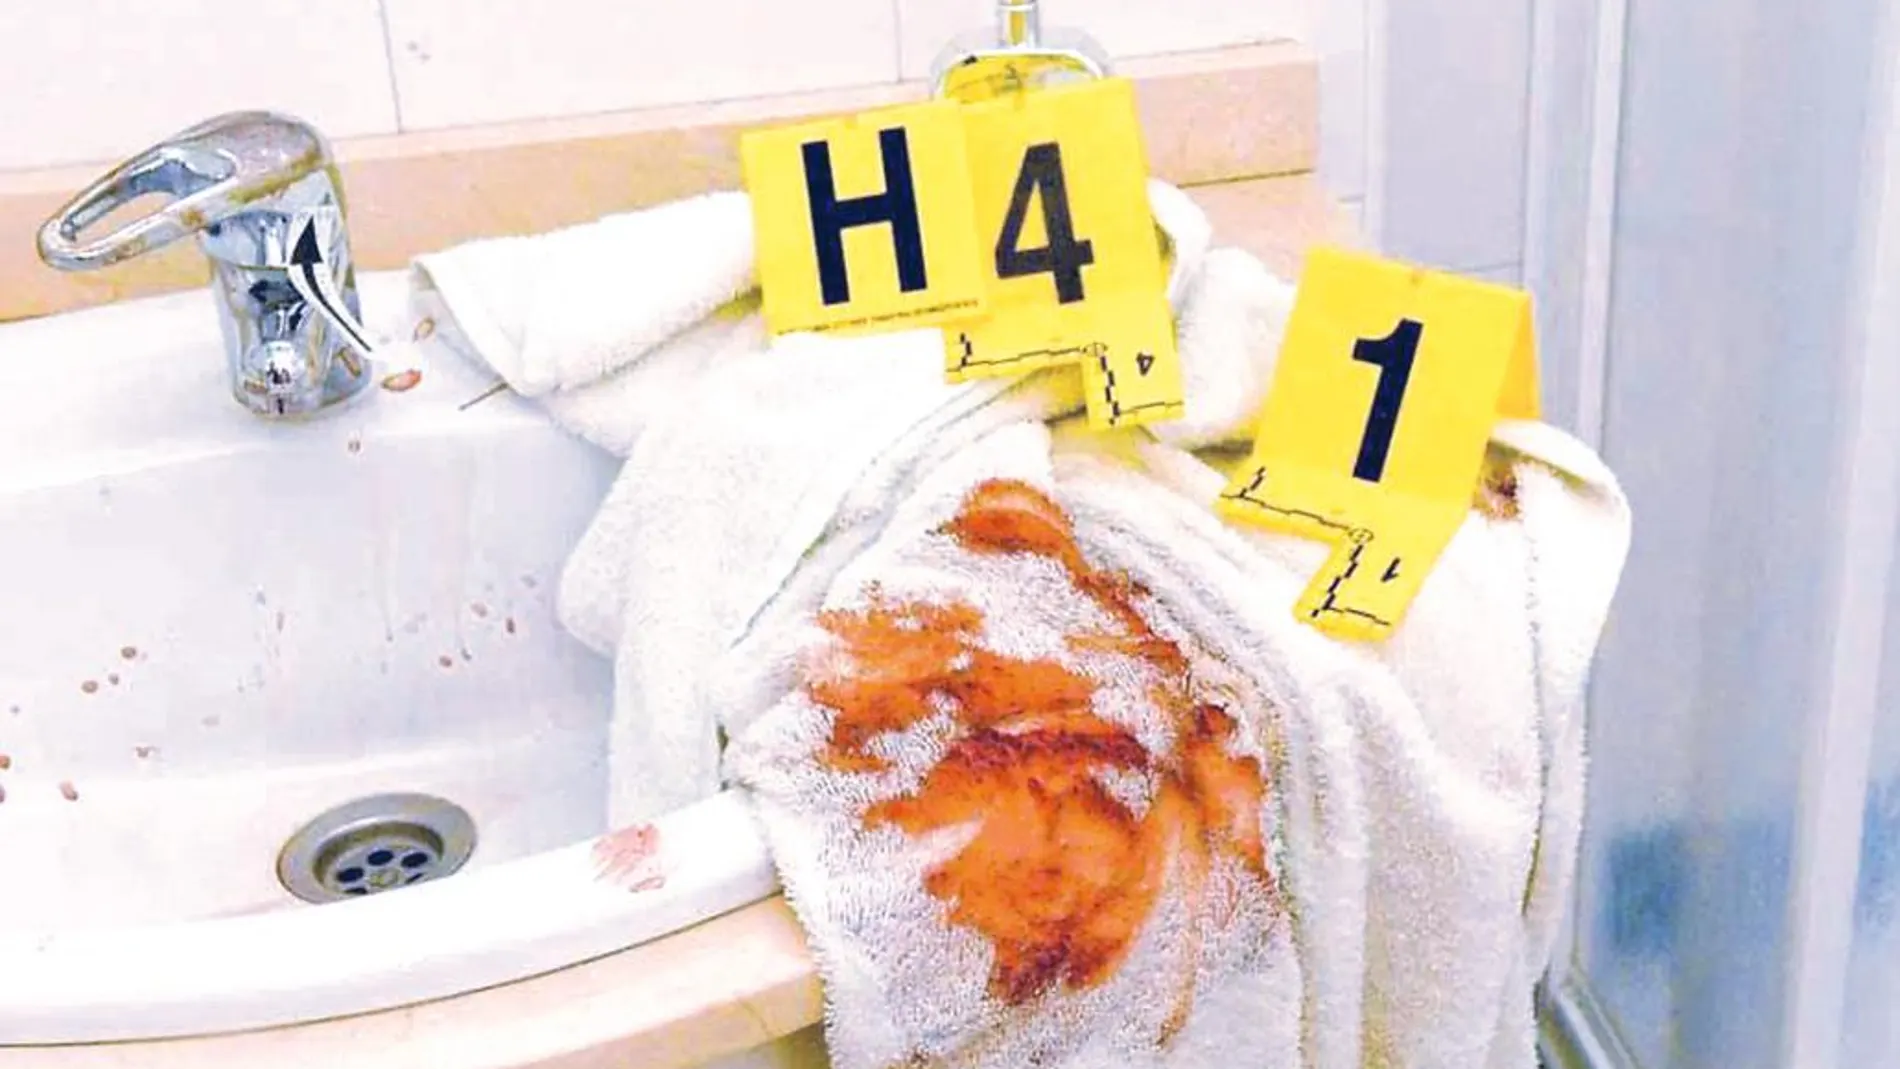 Cuarto de baño donde el asesino, que llevaba guantes, limpió el cuchillo tras cometer el doble crimen